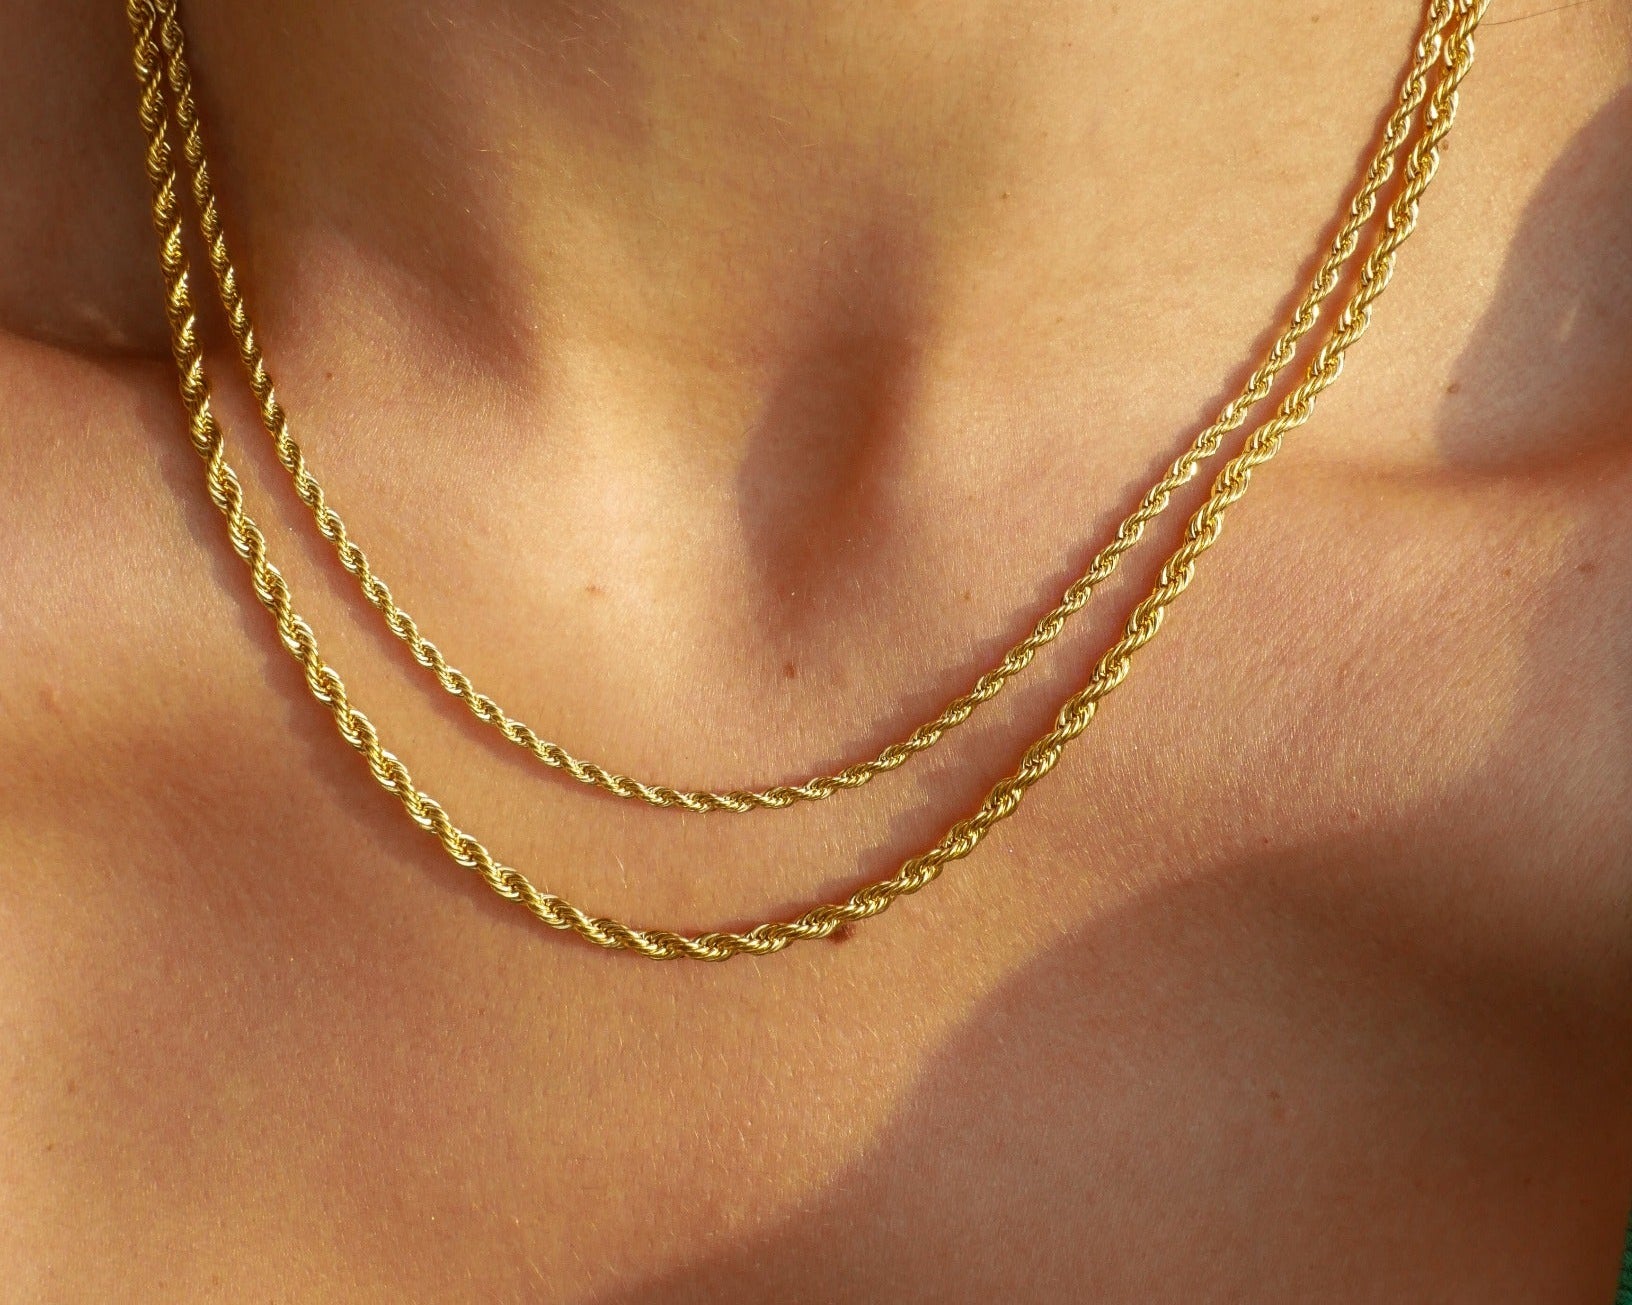 Sierra Rope Chain by Koréil Jewelry